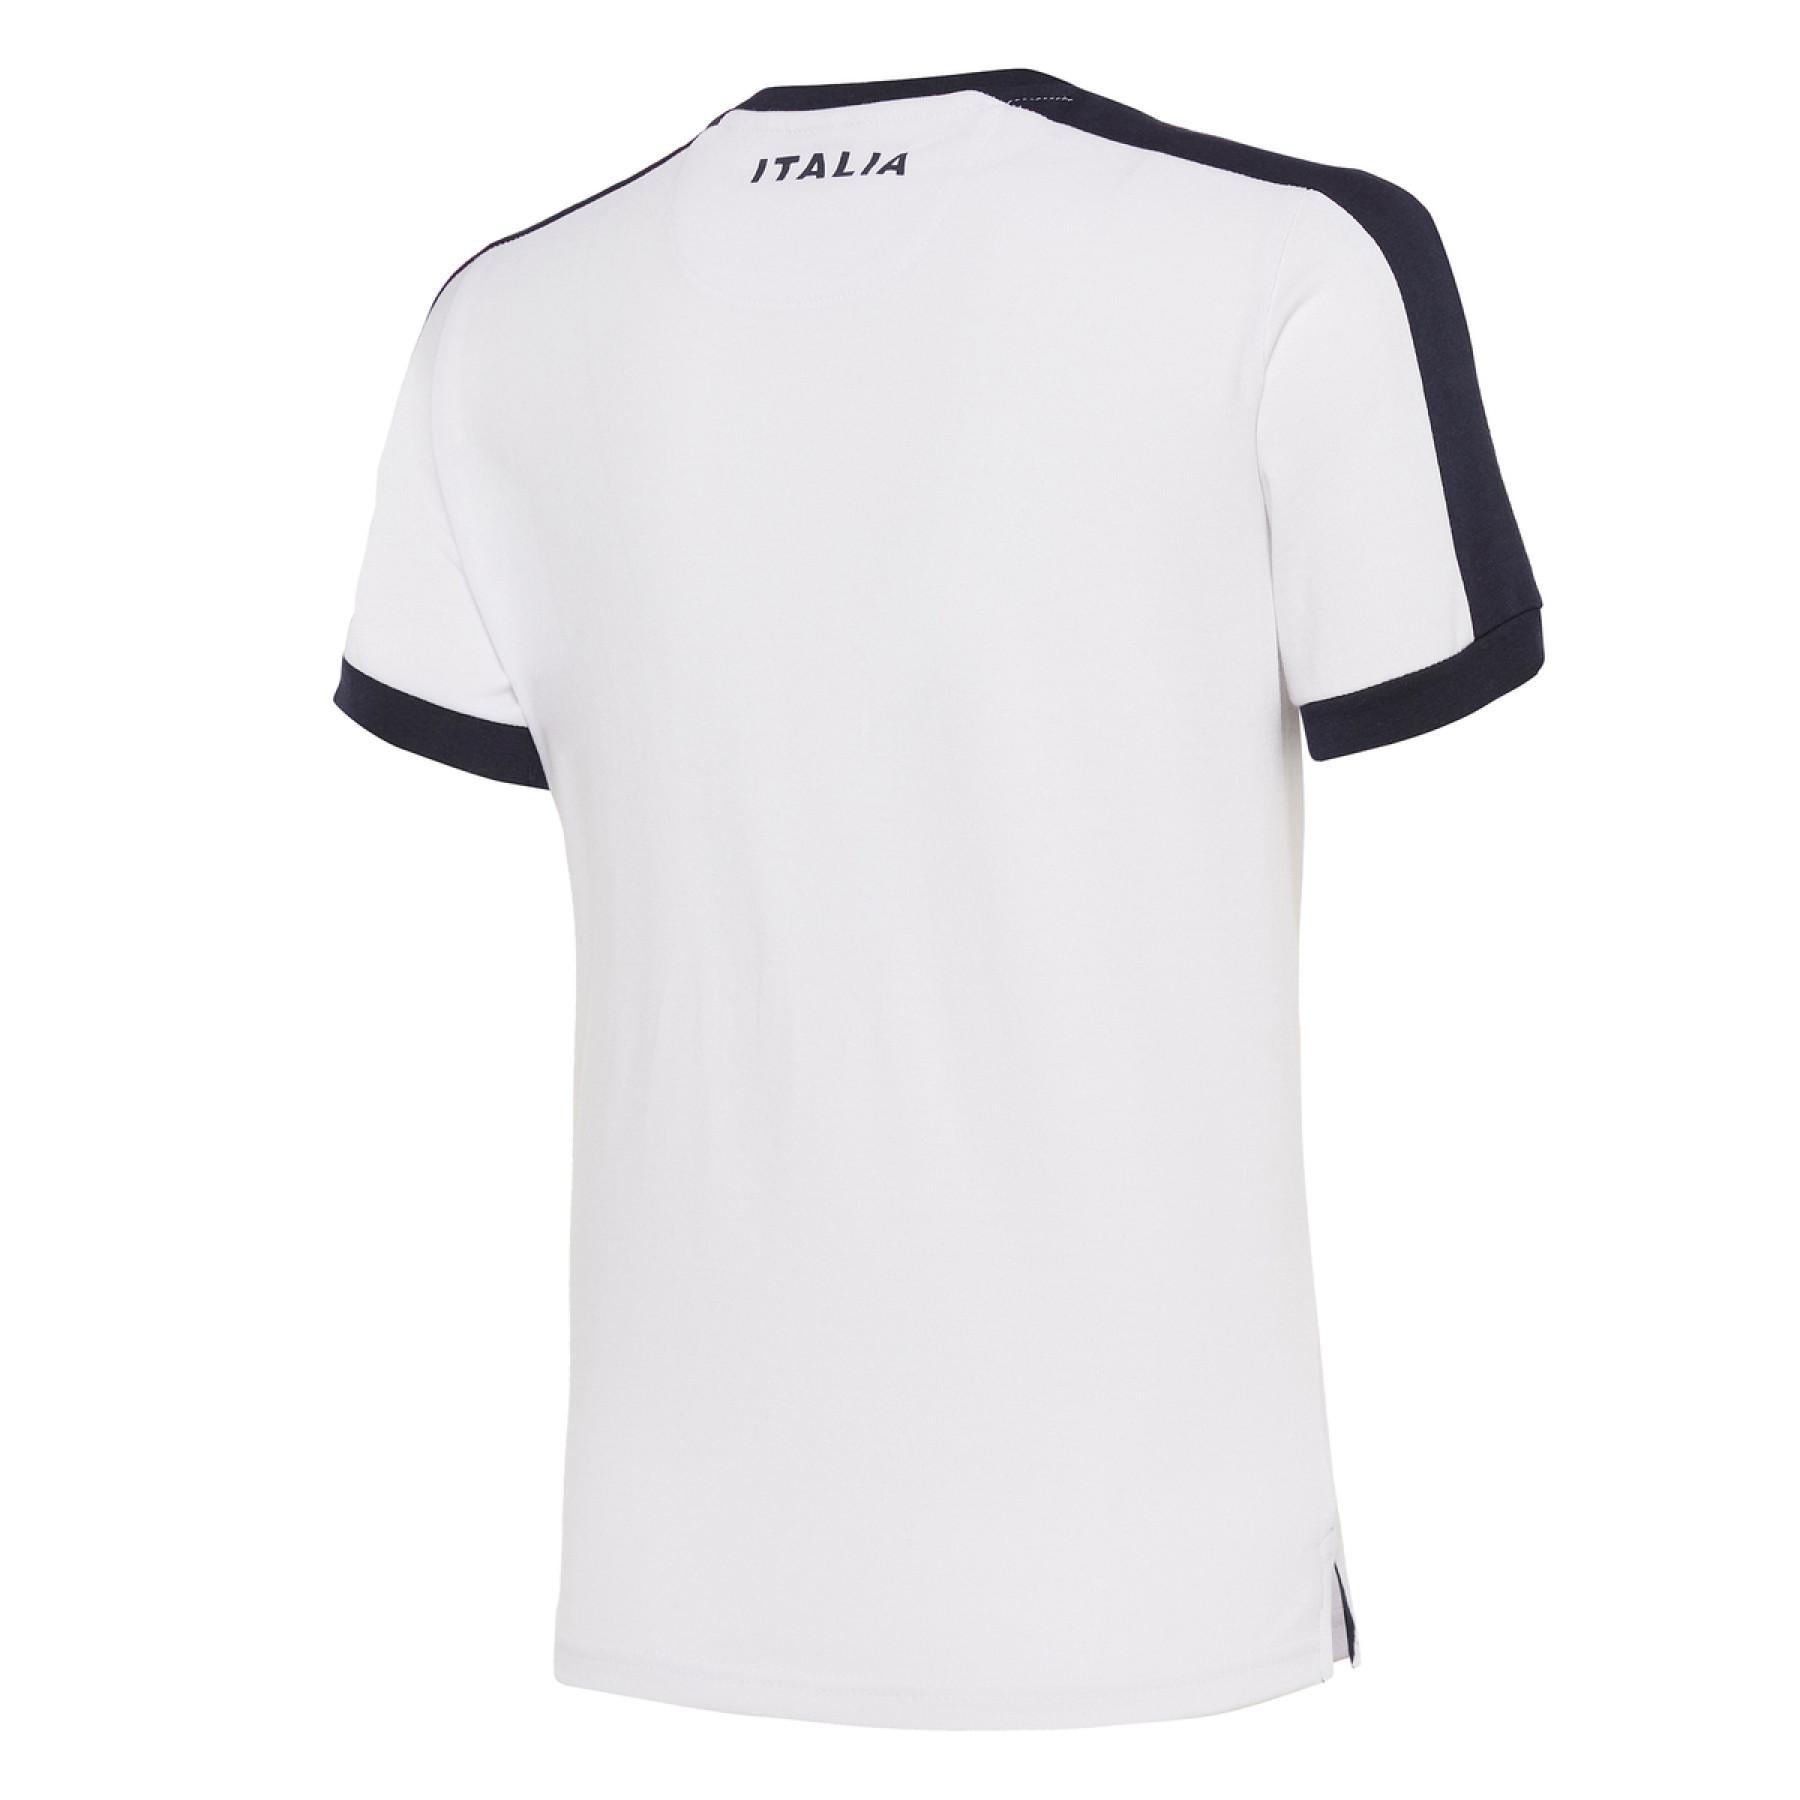 Kinder-T-Shirt aus Baumwolle Italie rugby 2019